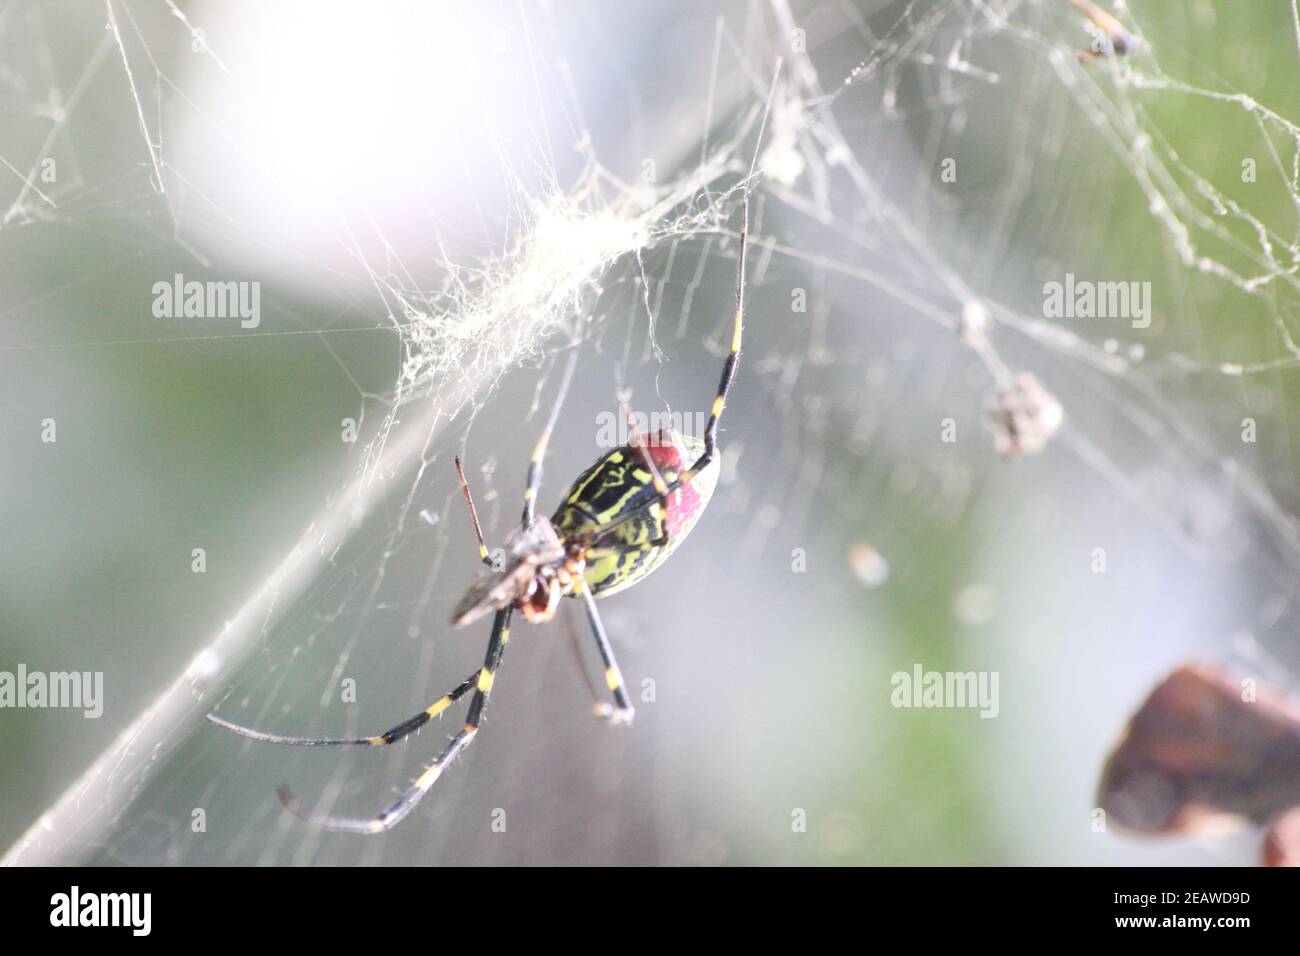 Nahaufnahme mit selektivem Fokus auf eine riesige Spinne und spinnennetze Stockfoto